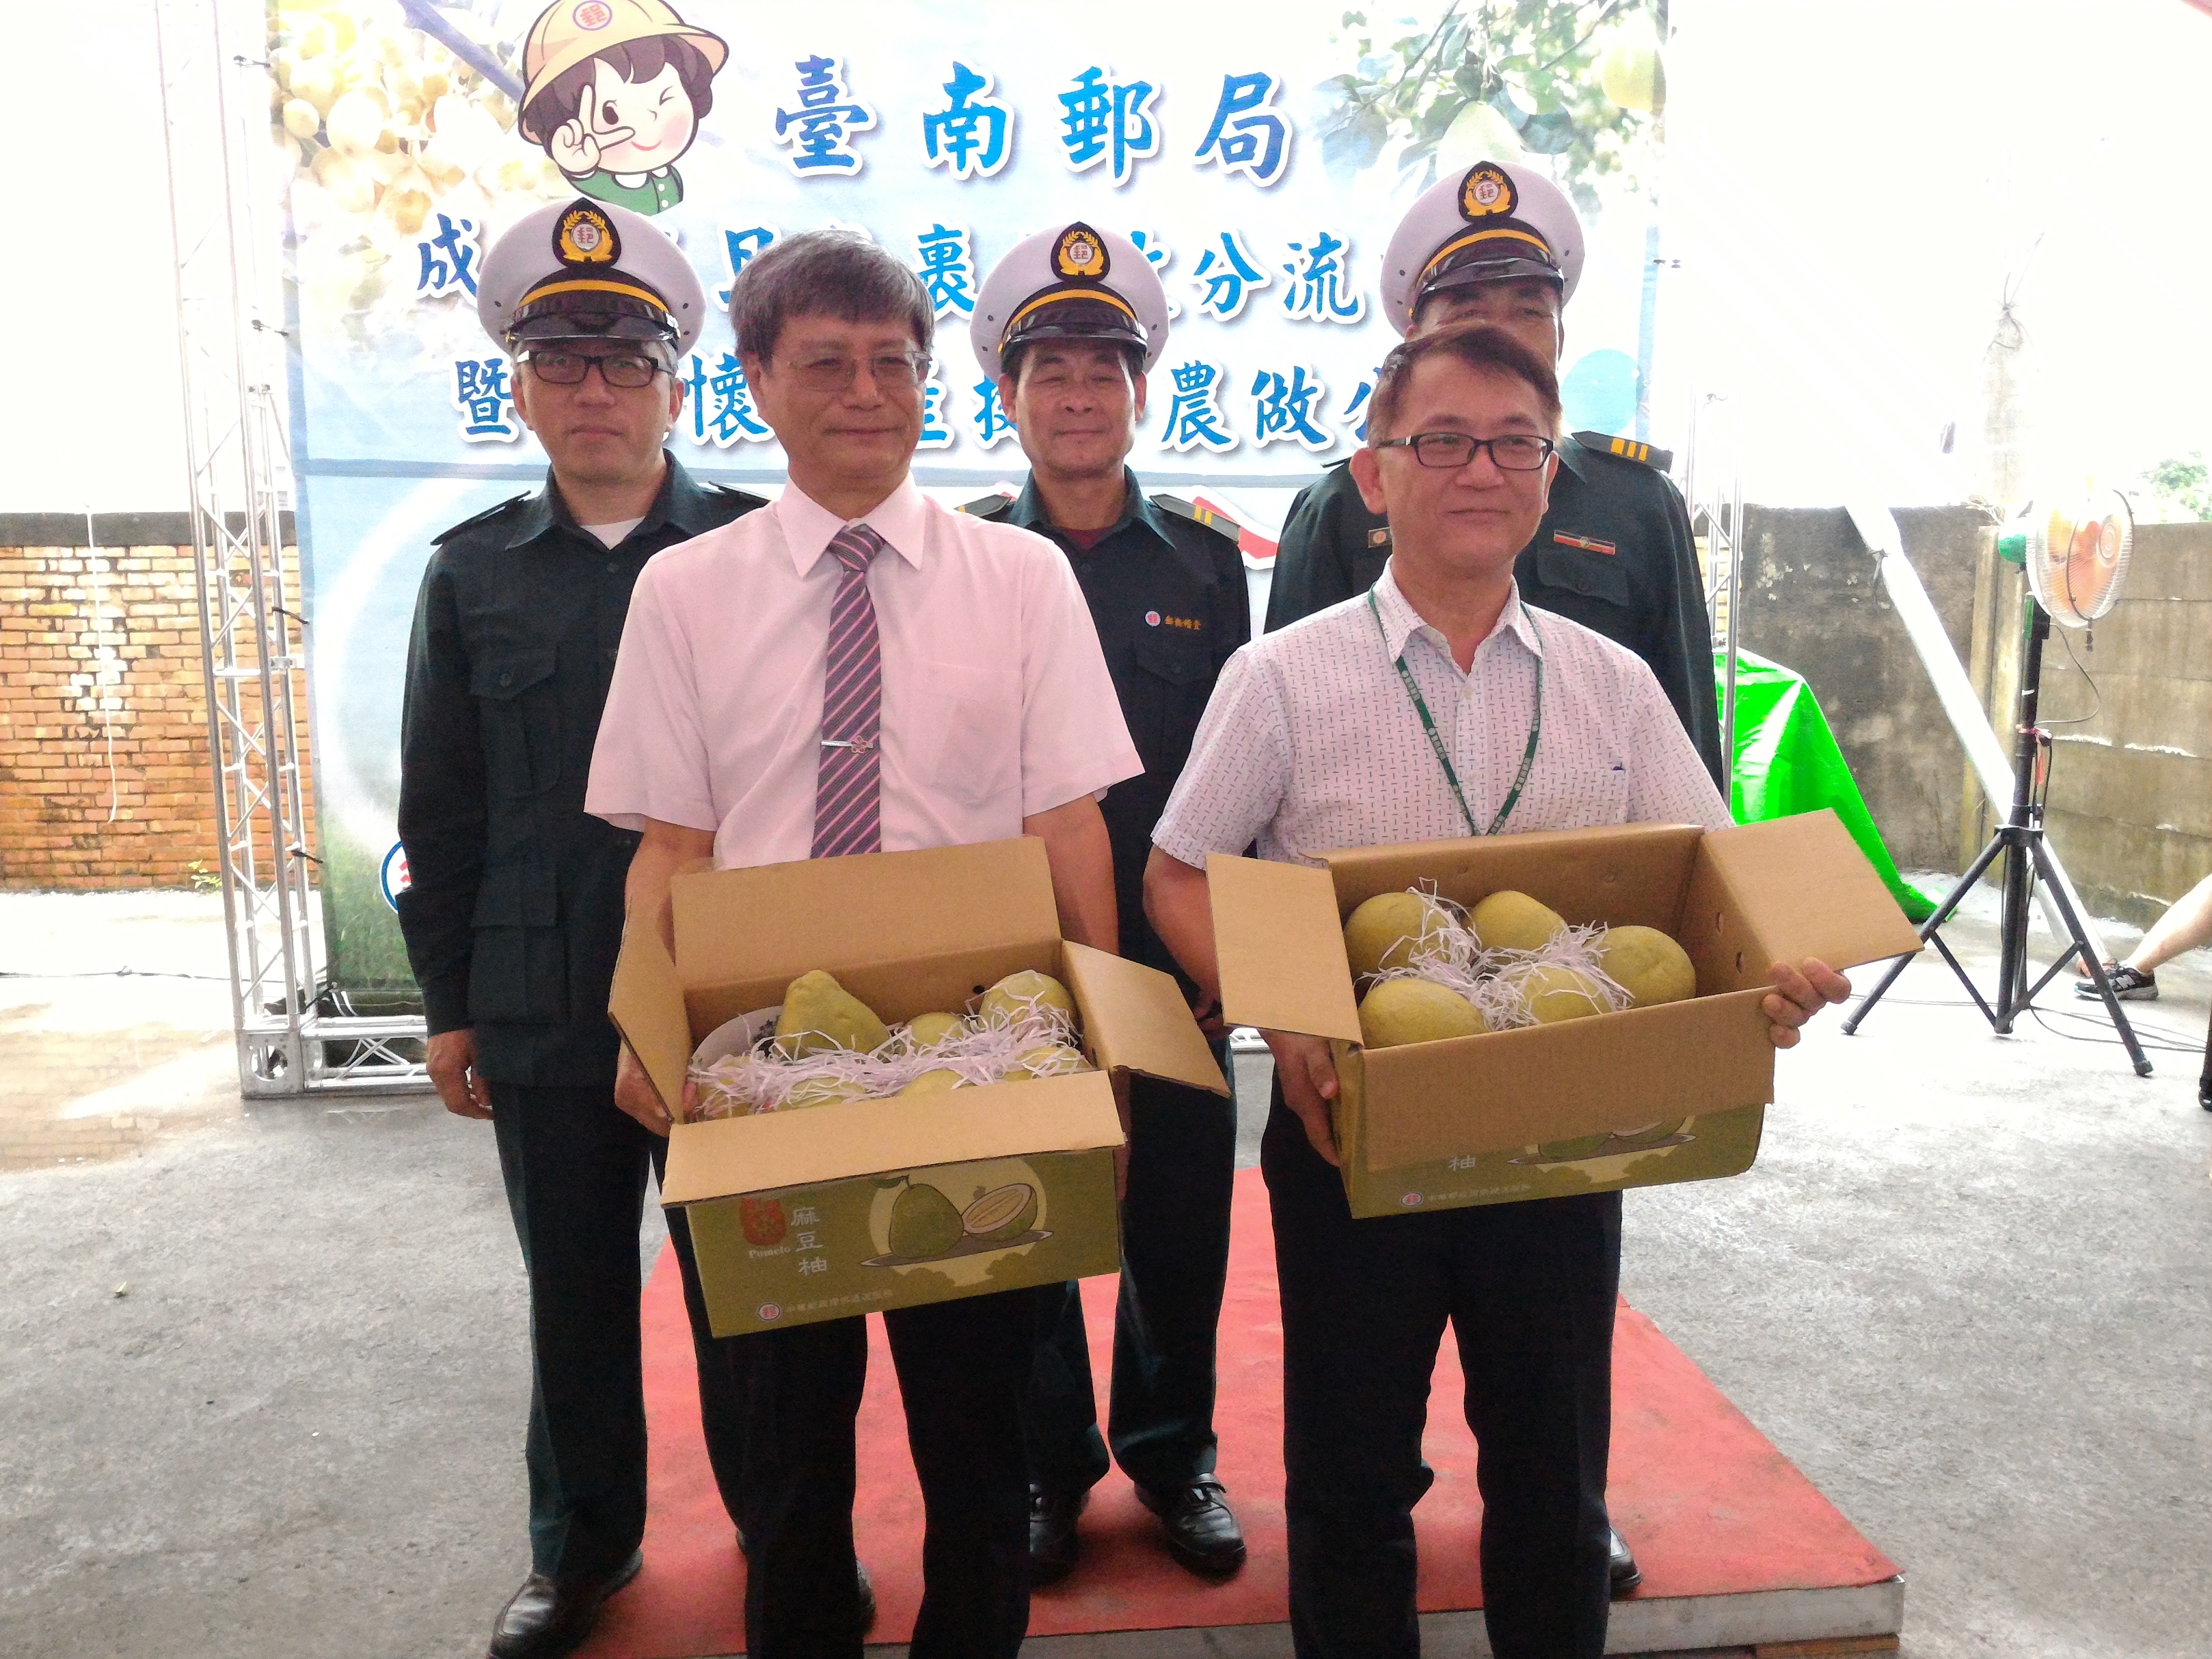 臺南郵局成立上收分流中心 & 關懷農產挺小農記者會